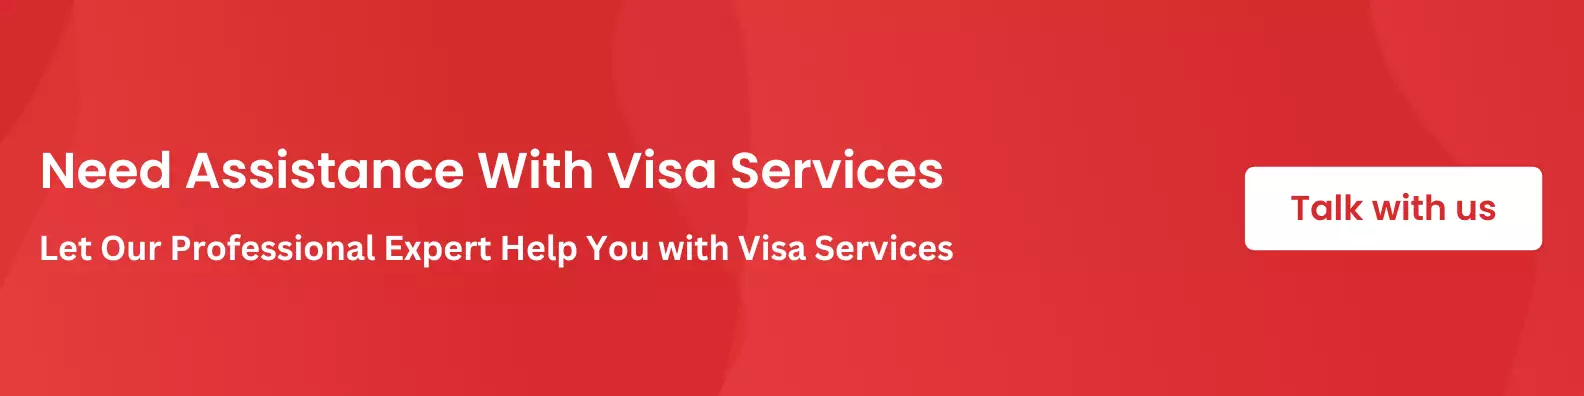 Visa Services Assistance